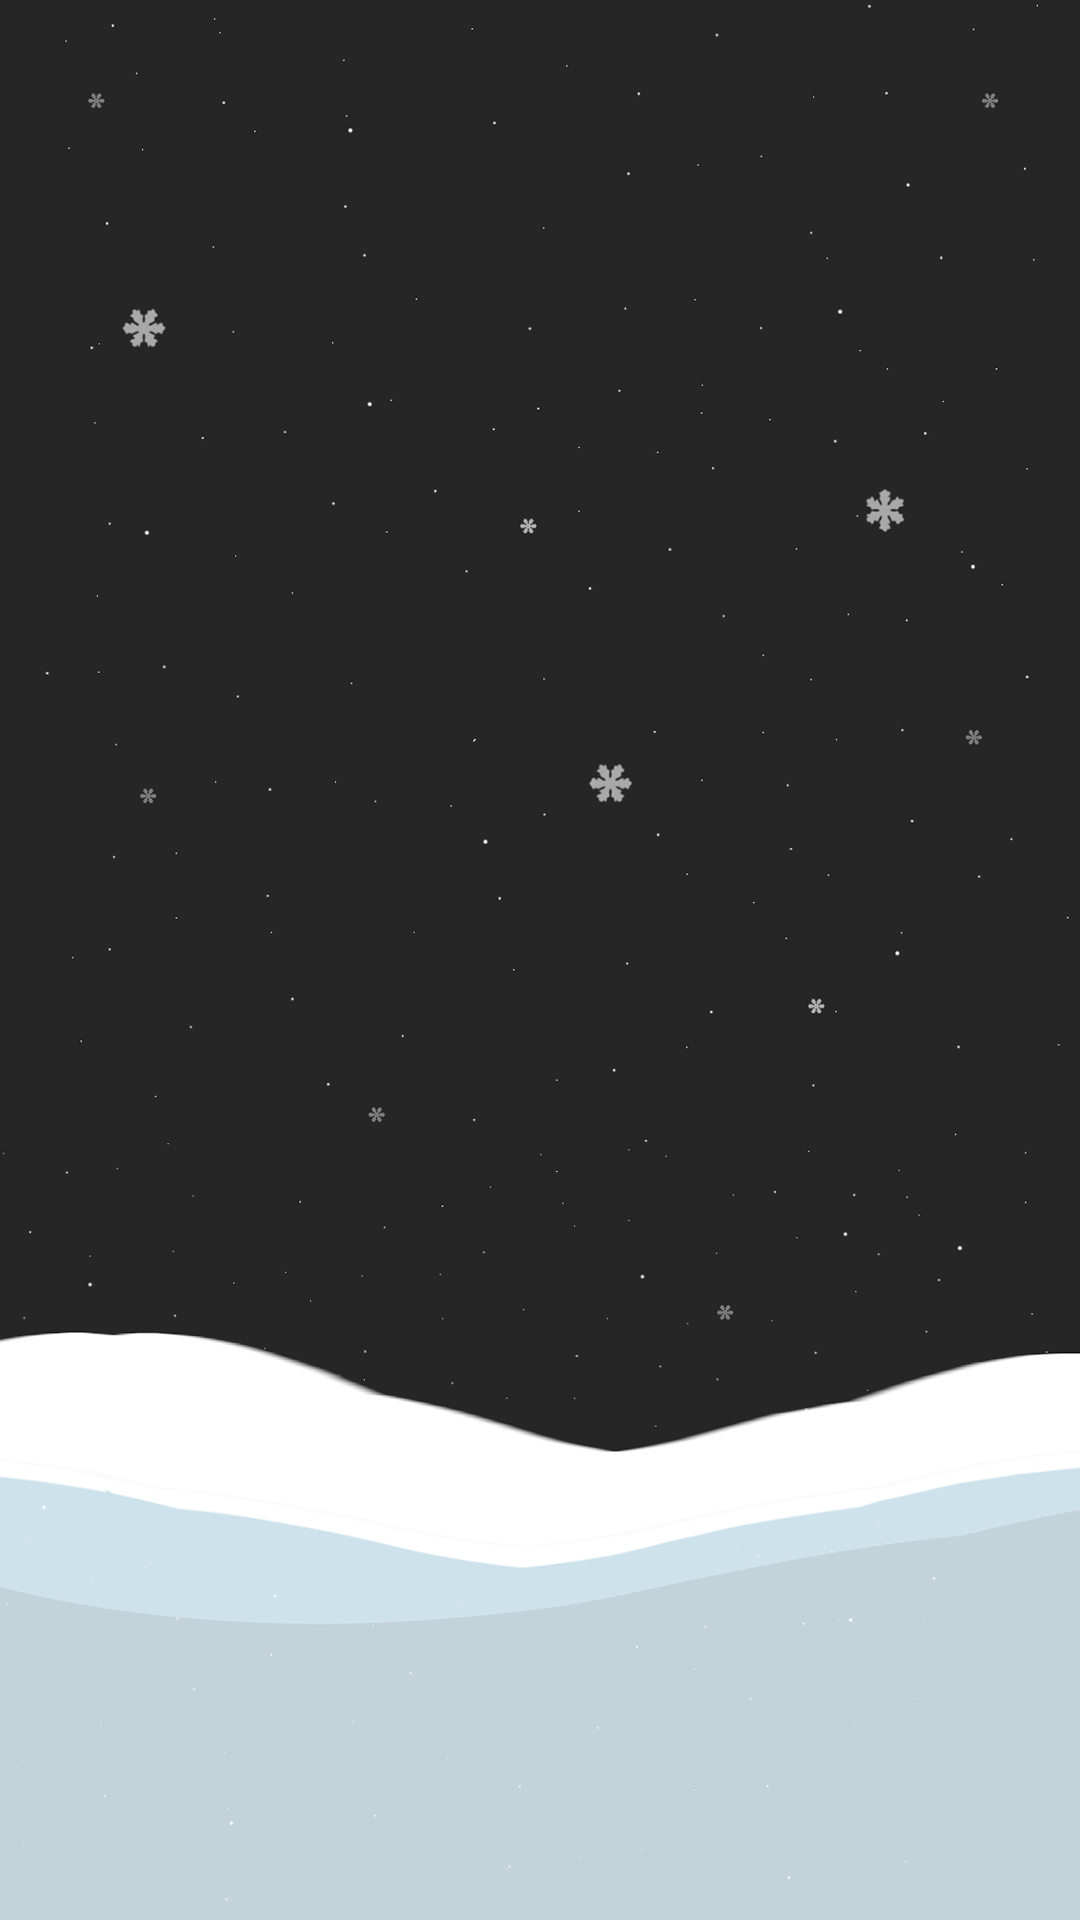 冬の夜 ミニマルデザインのiphonex壁紙 Iphone Wallpapers